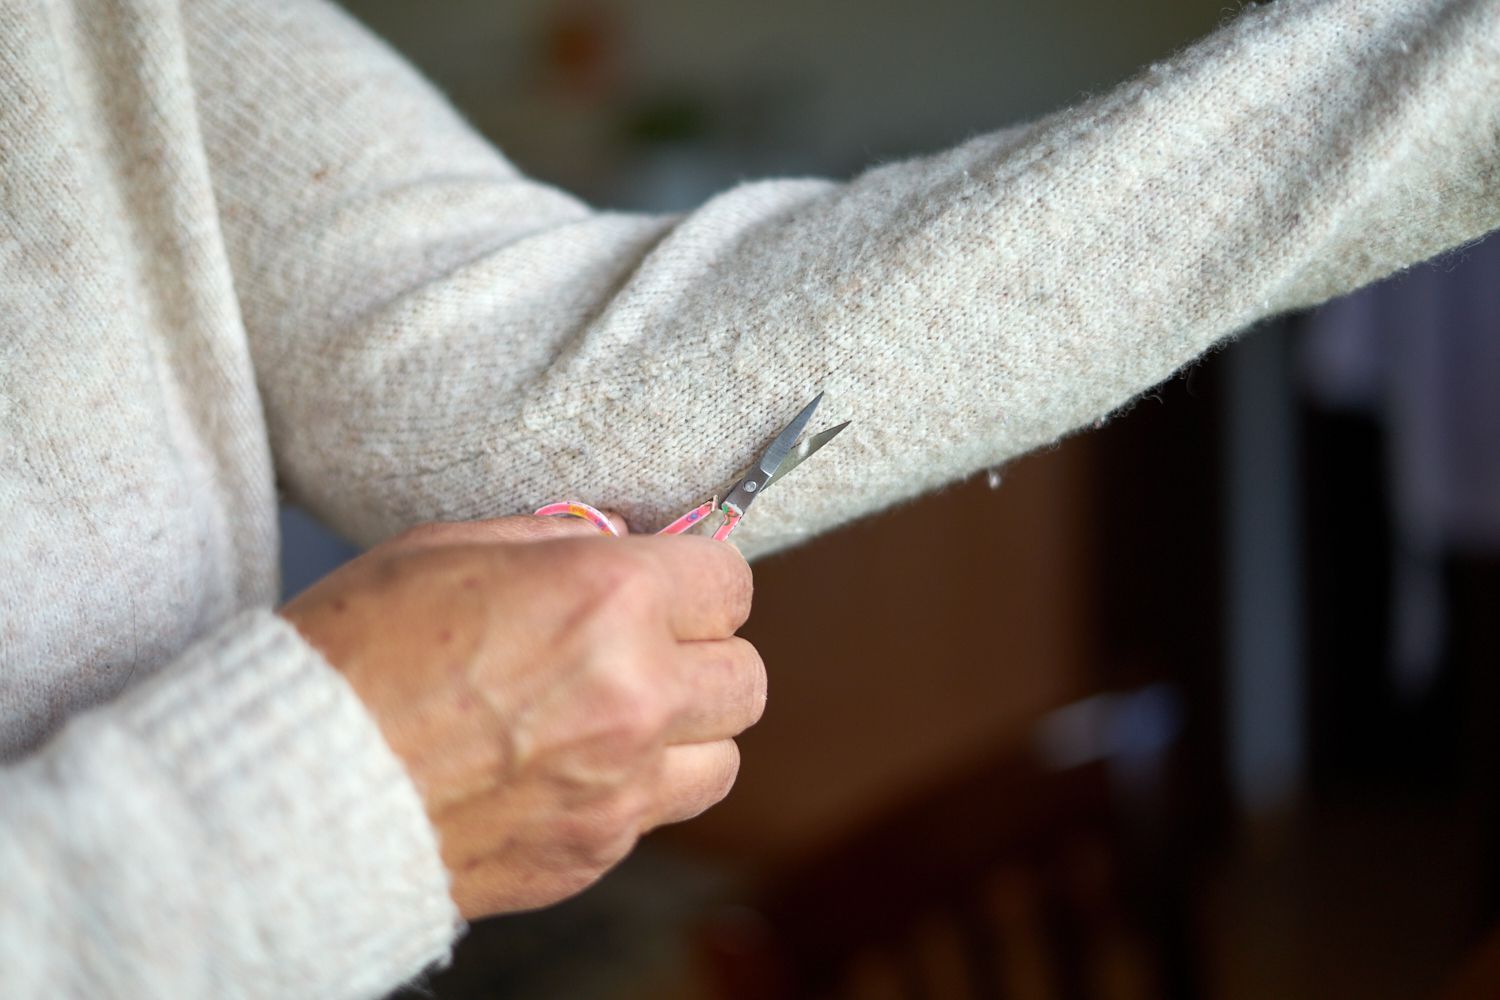 persona con jersey de color crema corta cuidadosamente las pastillas del brazo extendido con unas tijeras pequeñas